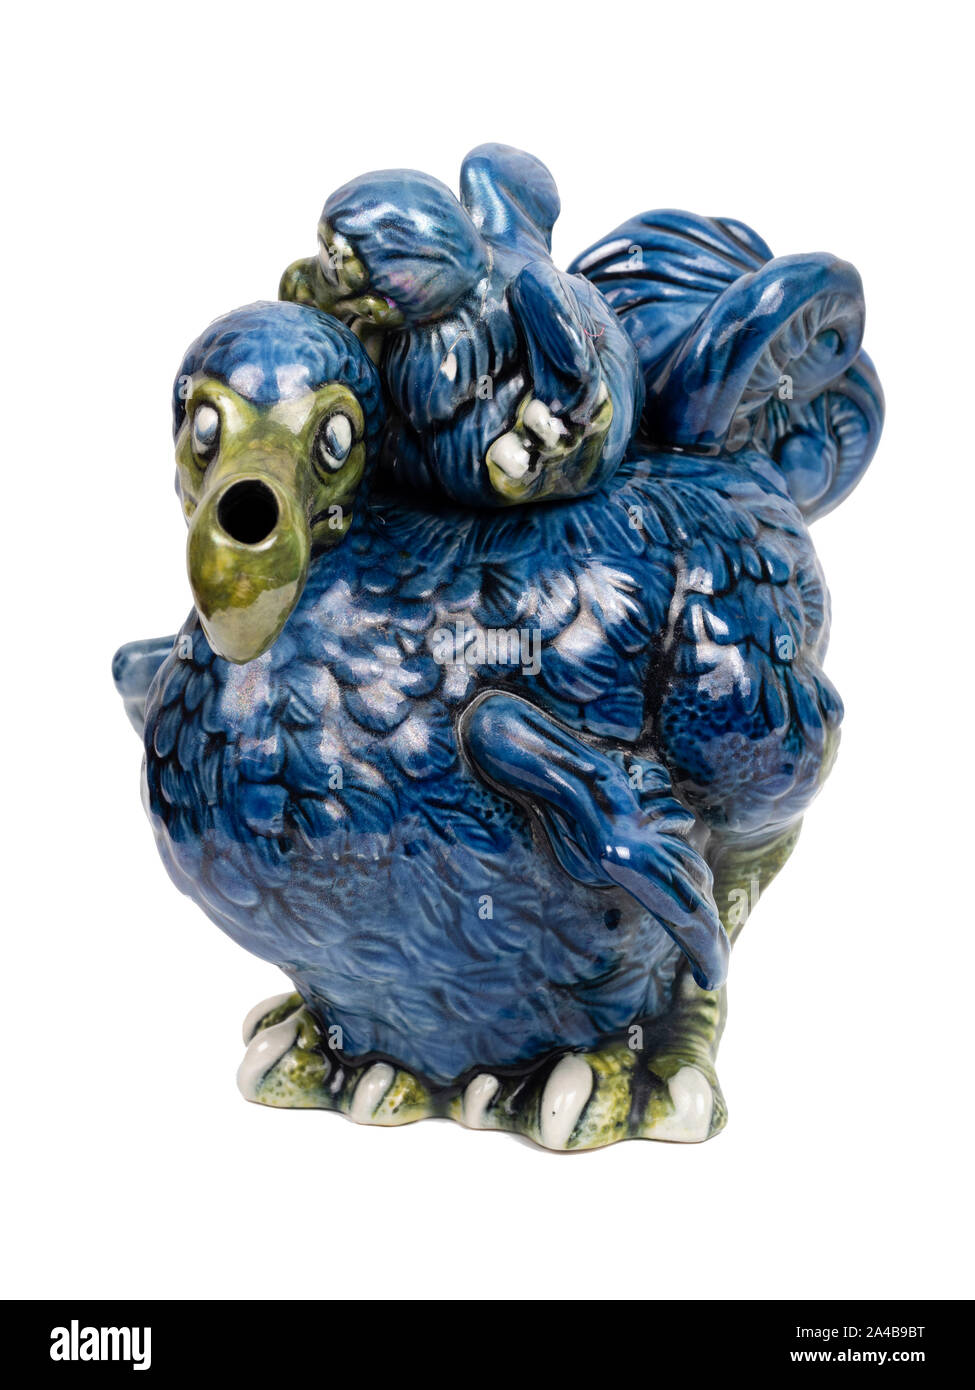 Les espèces en voie de disparition de la Poterie, Cardew dodo poussin bleu et ornement théière sur fond blanc Banque D'Images